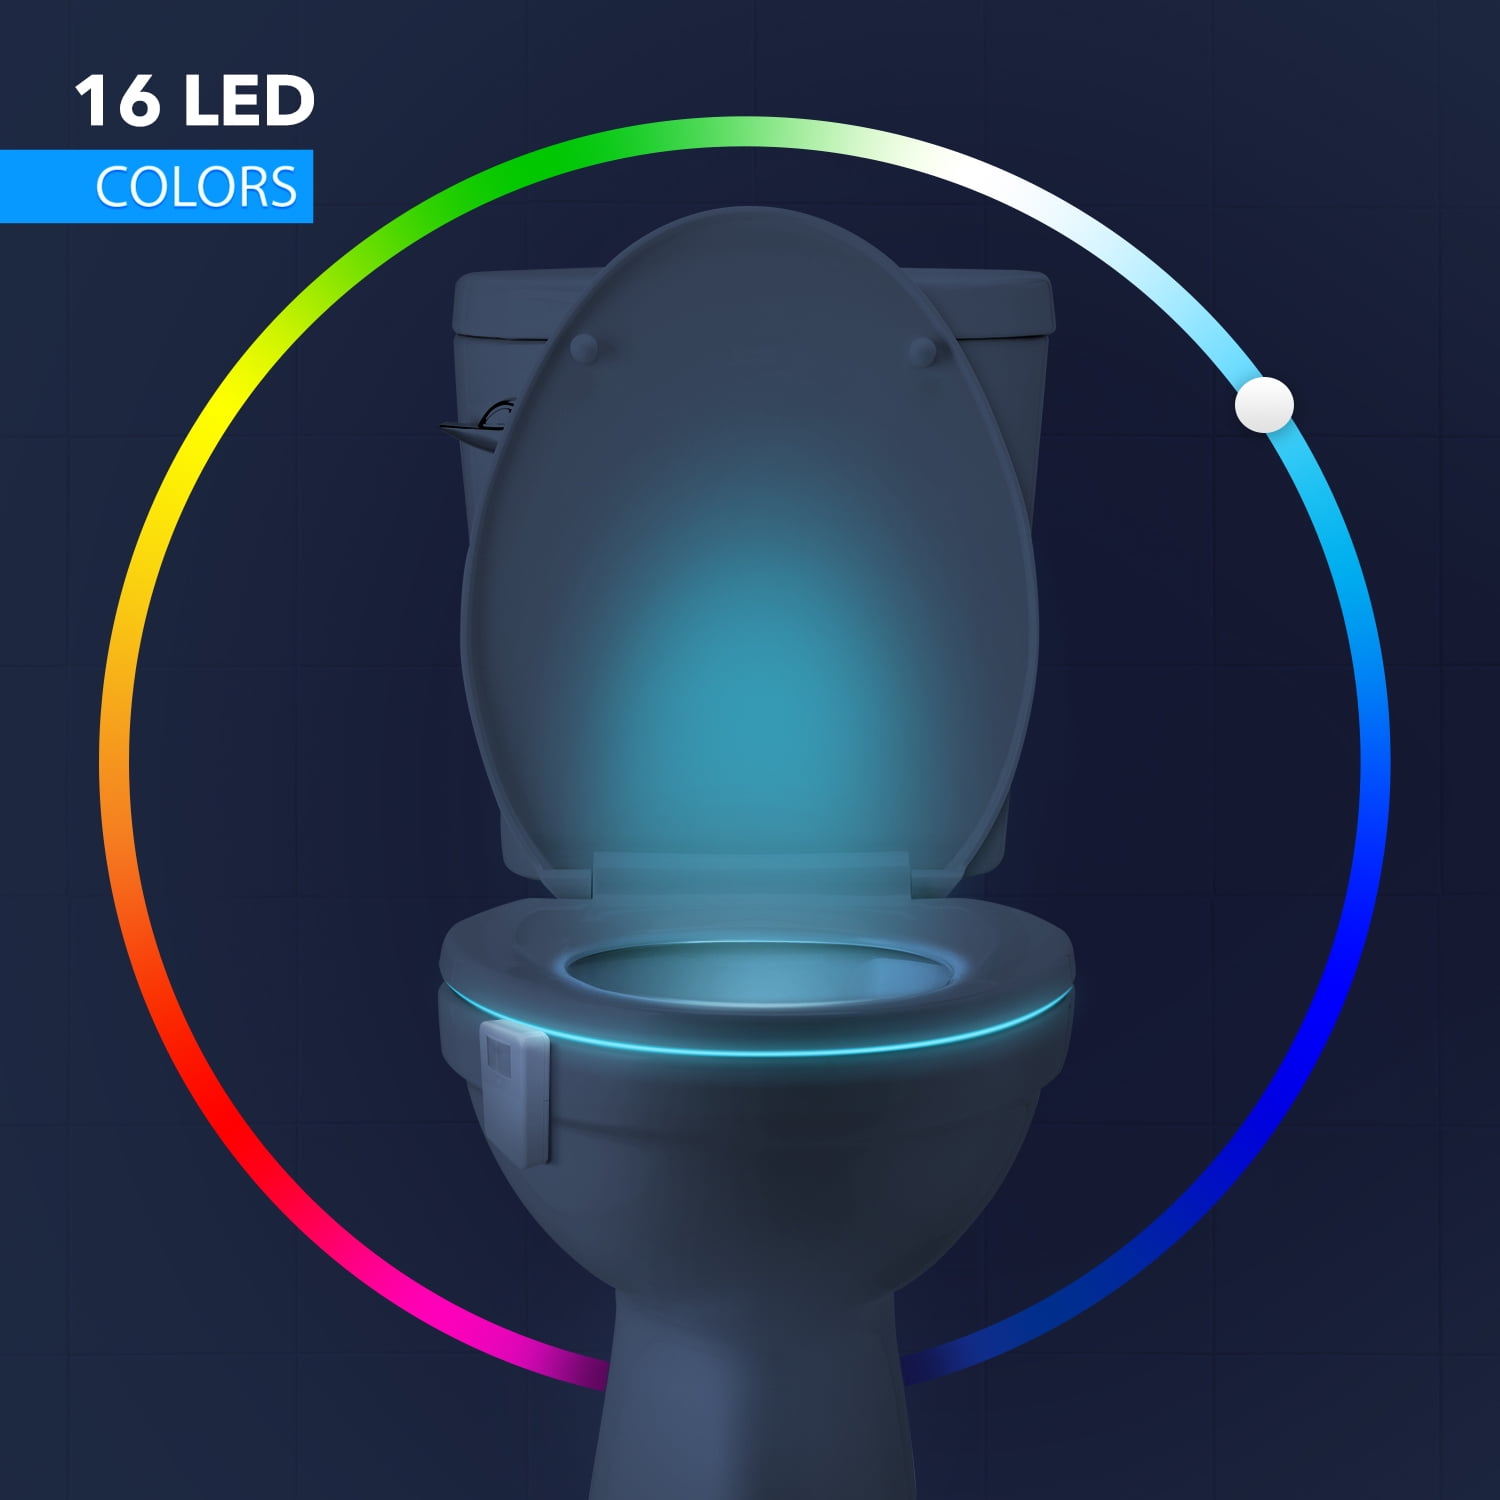 Details about   Toilet Light Motion Detection Advanced 16-Color LED Toilet Bowl Light